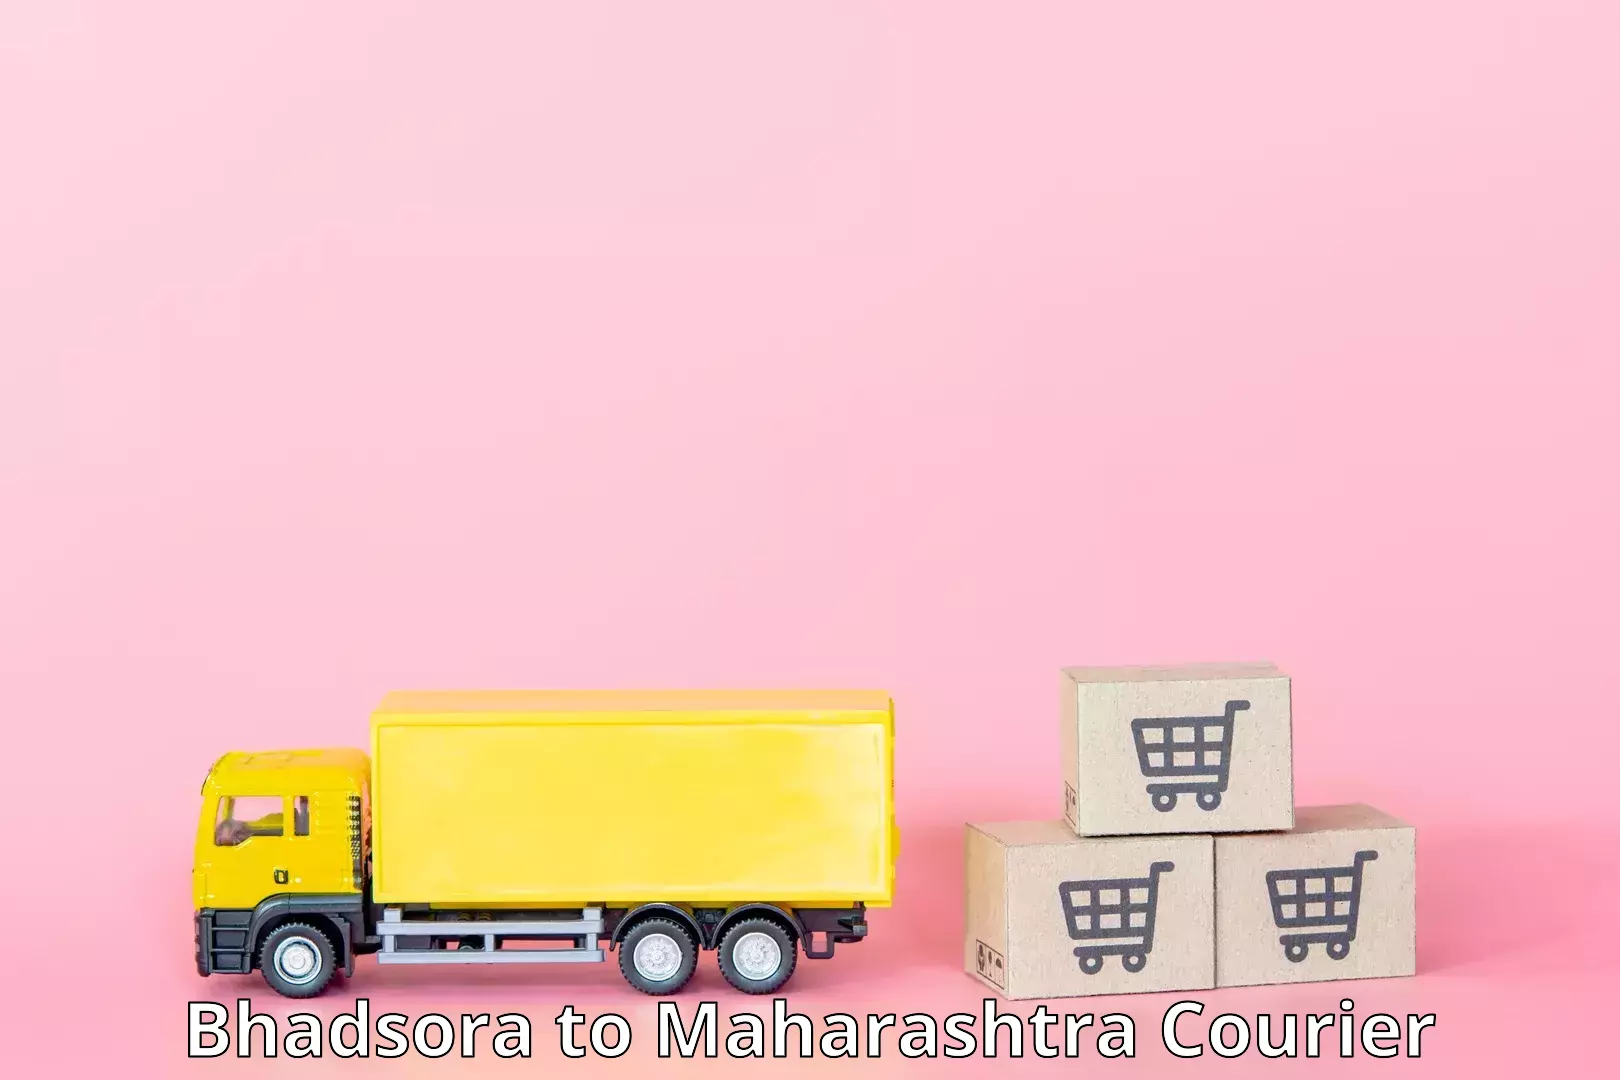 Efficient freight service Bhadsora to Maharashtra